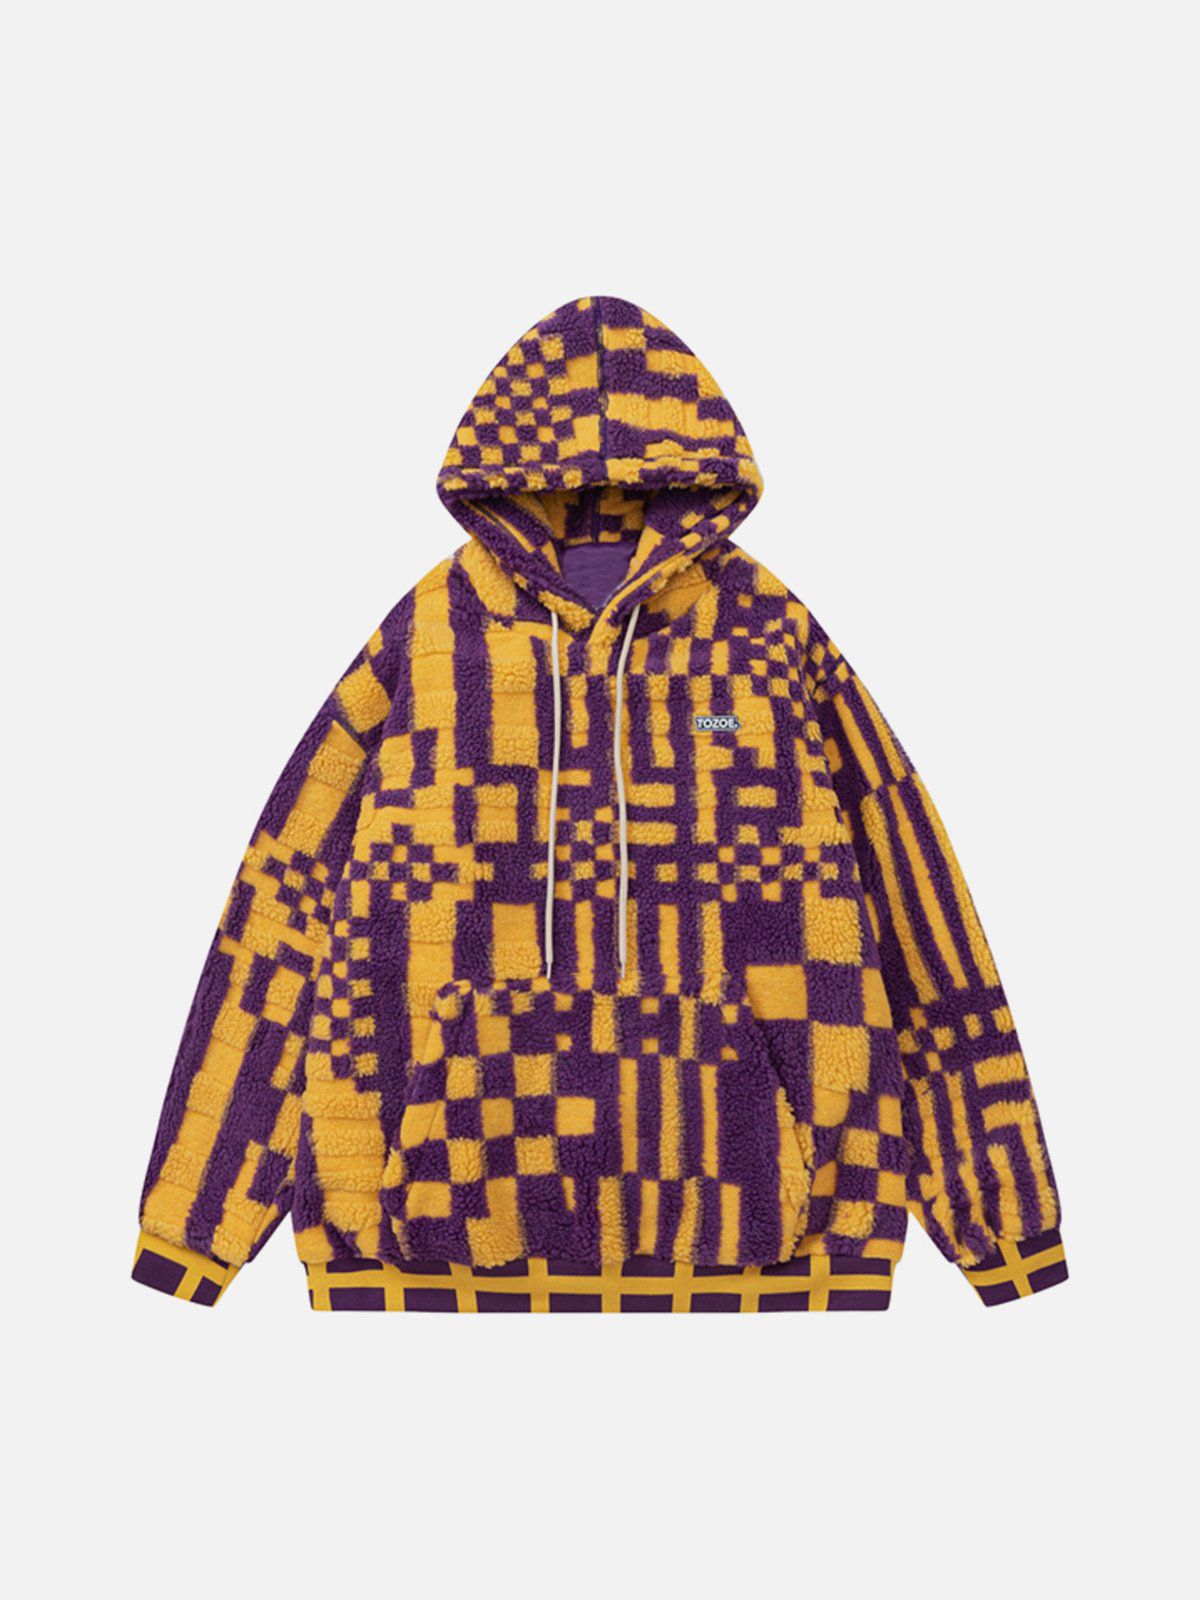 LUXENFY™ - Pixel Stripe Hooded Sherpa Coat luxenfy.com